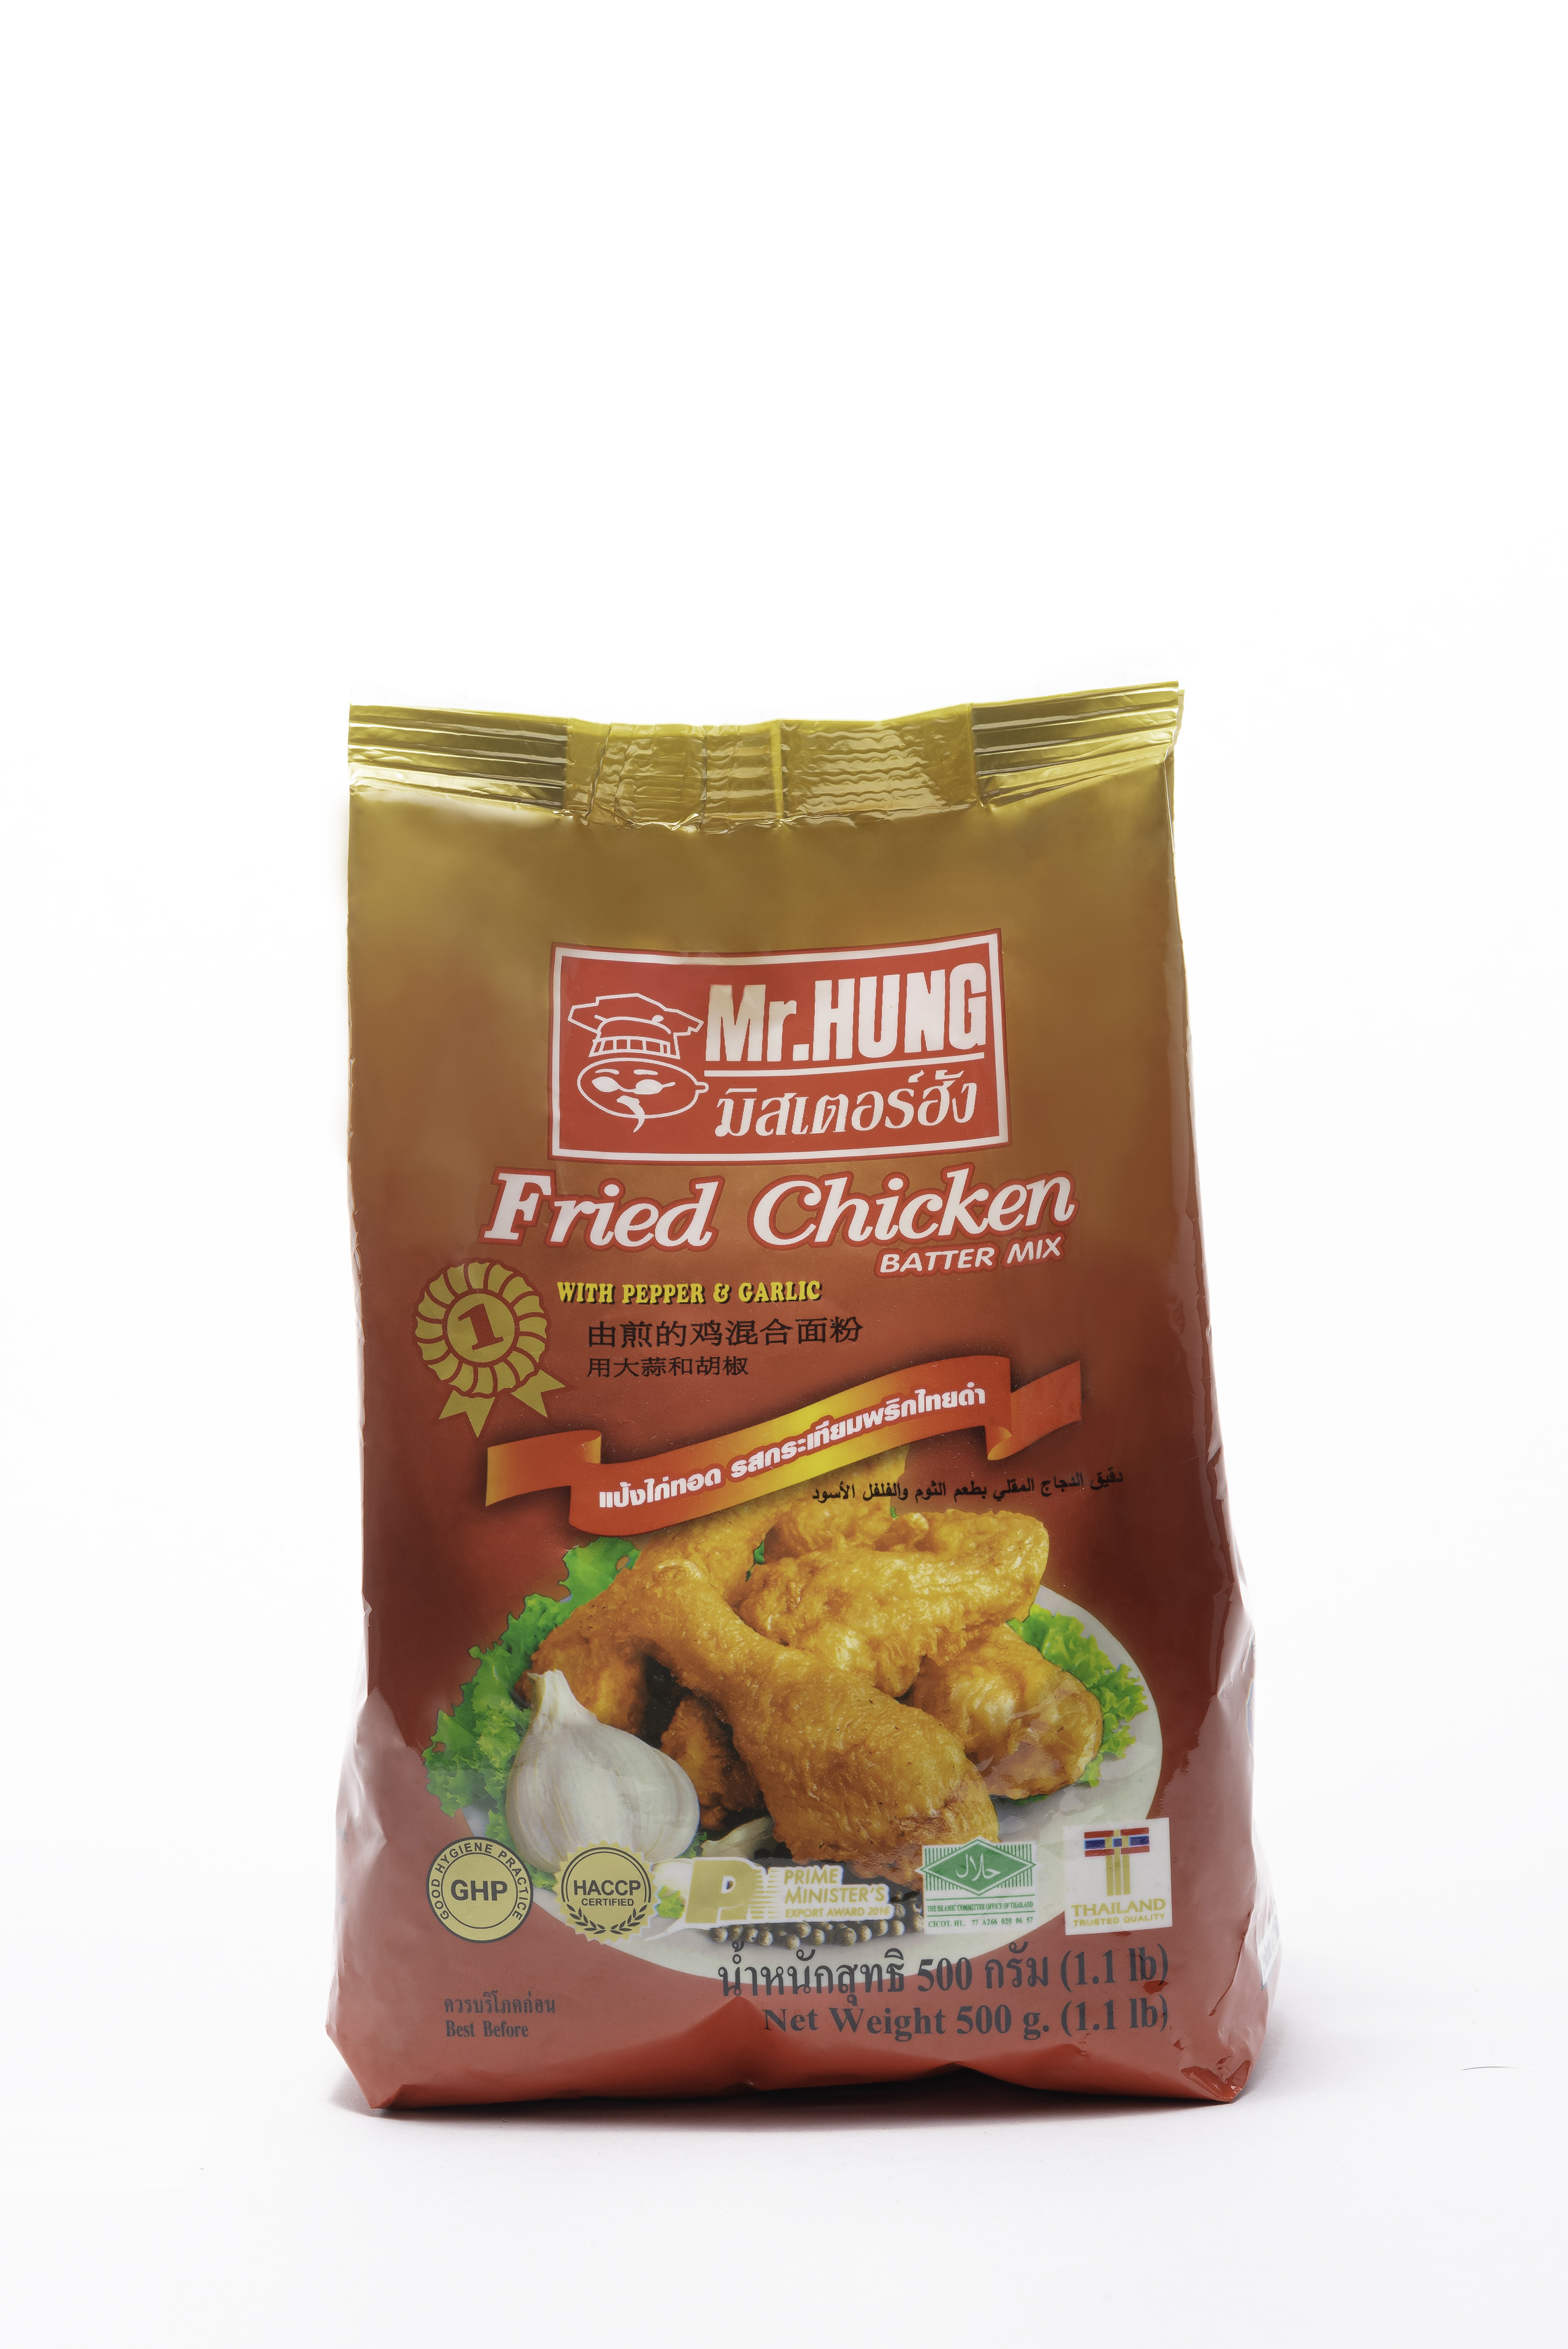 Fried Chicken Batter Mix Flour - Mr.HUNG Brand